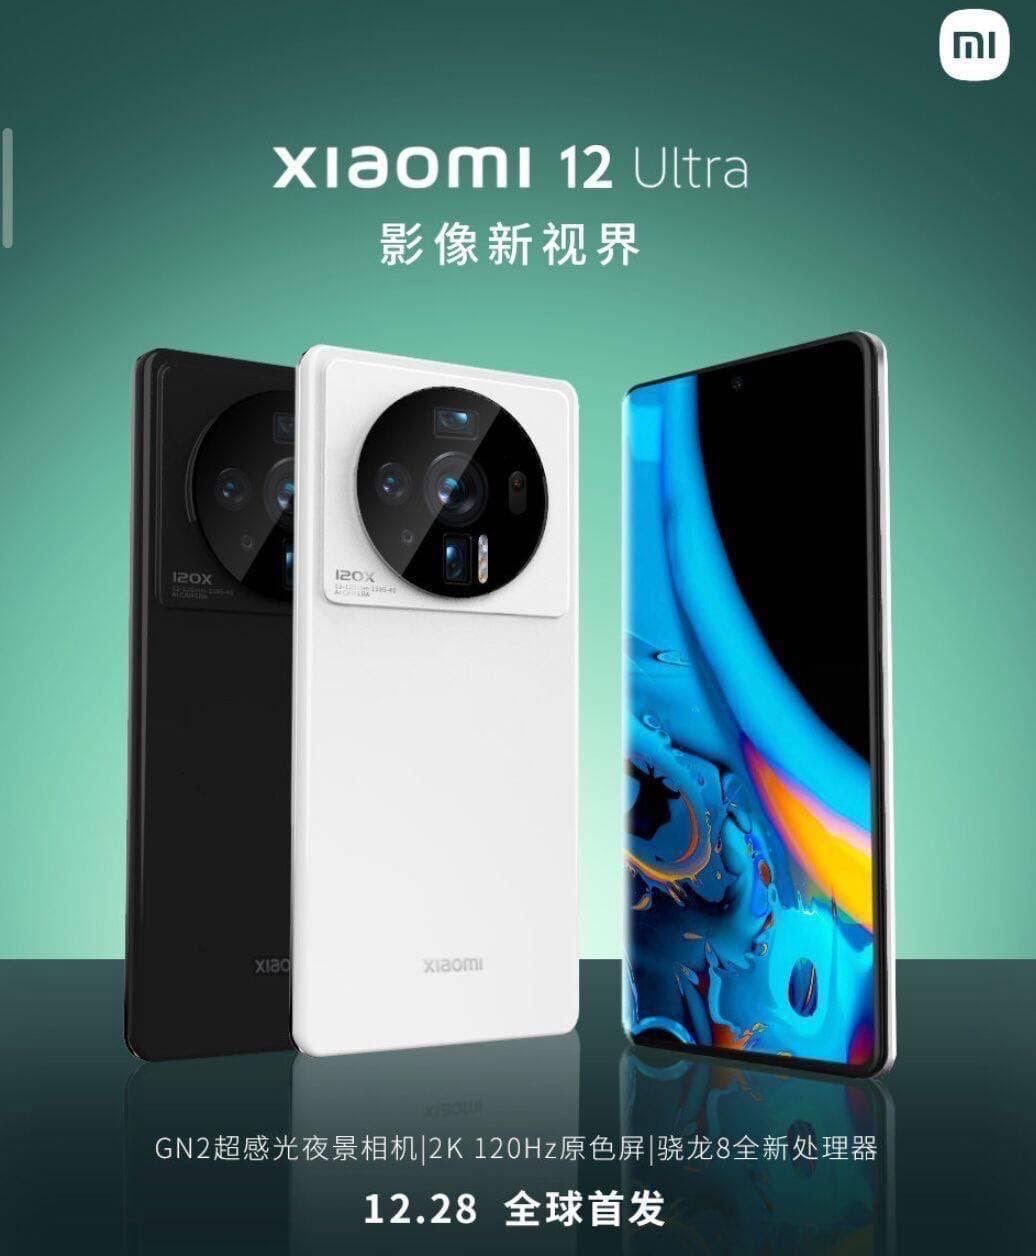 Ловите официальный тизер флагмана Xiaomi 12 Ultra, анонс которого должен состояться 28 декабря.